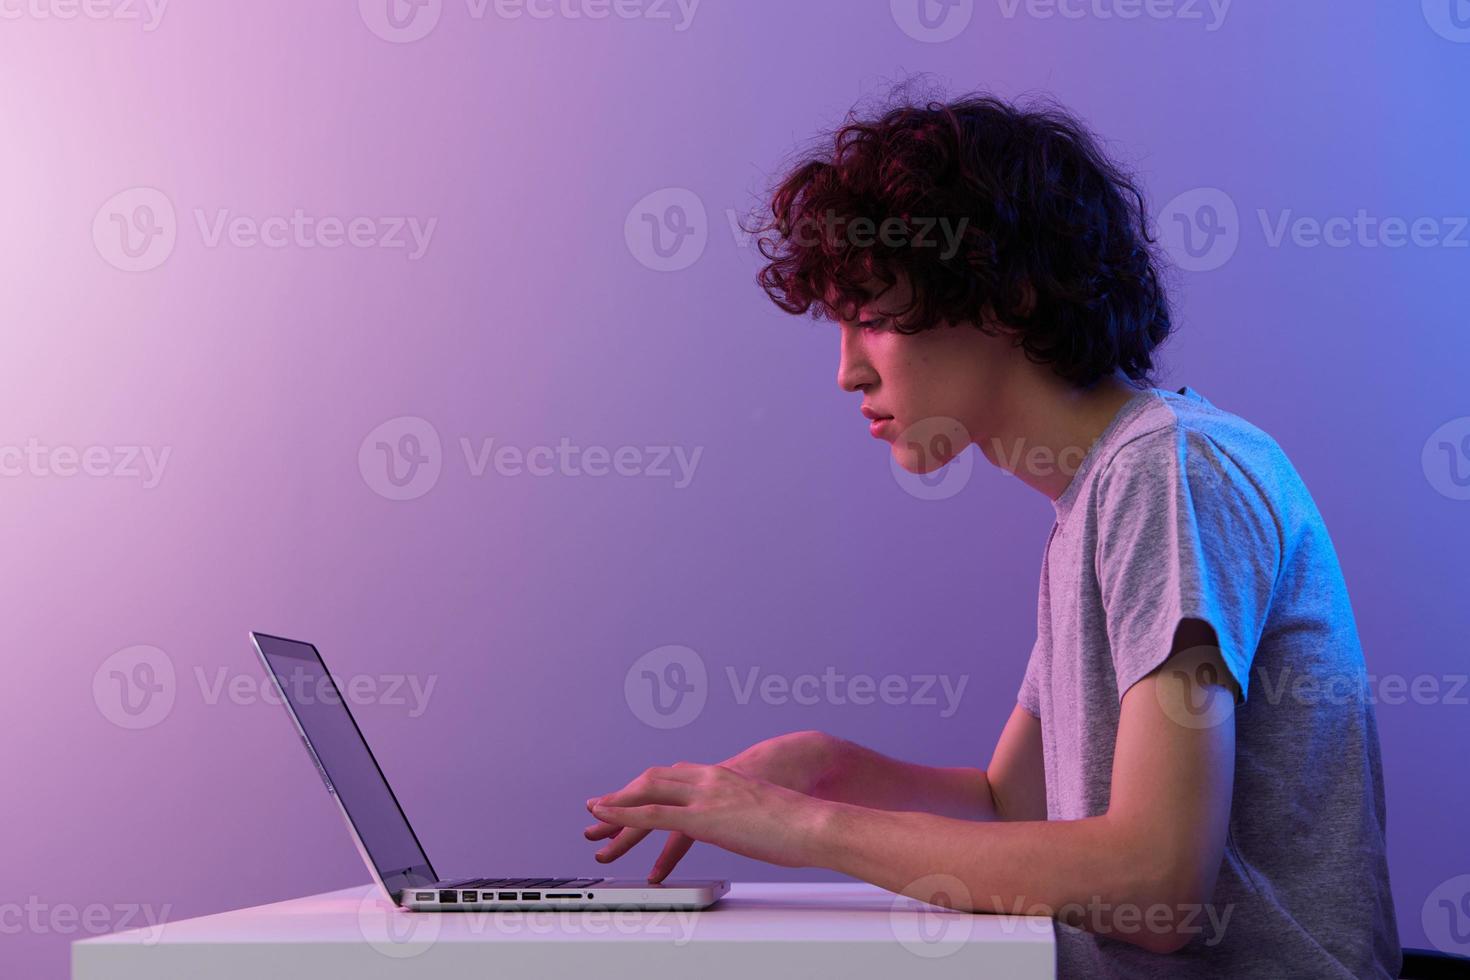 Mens cyberspace spelen met in voorkant van een laptop paars achtergrond foto